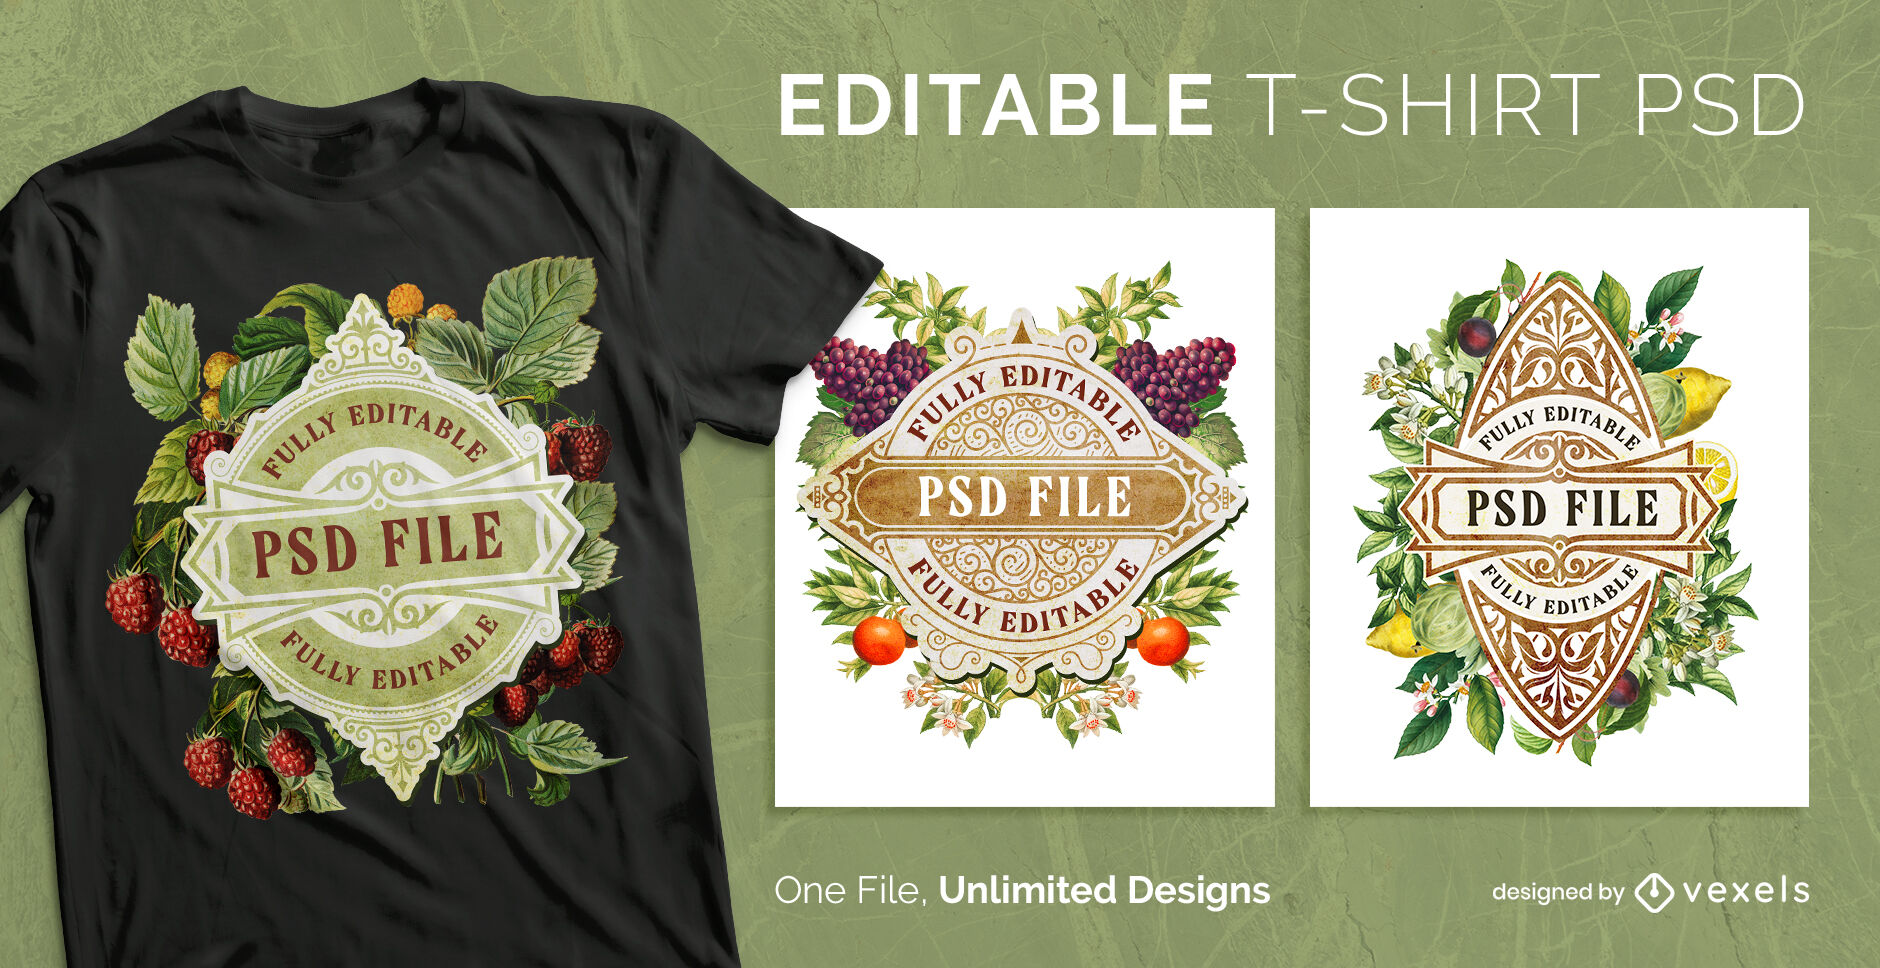 Vintage fruit label scalable t-shirt psd